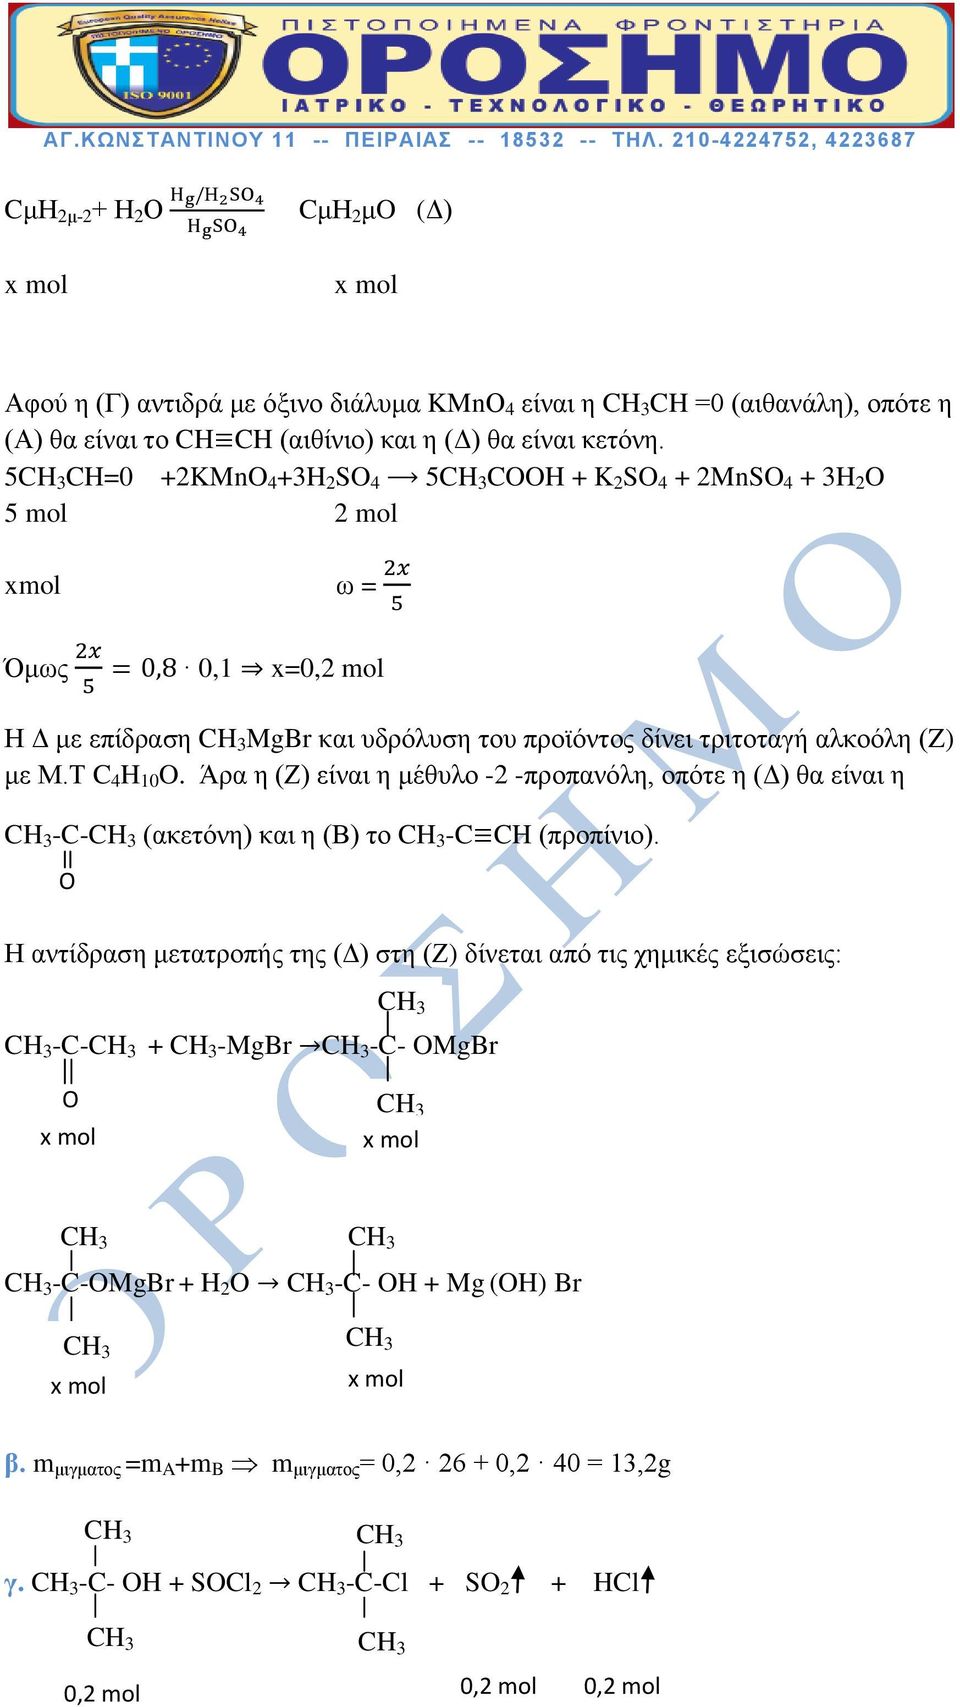 Μ.Τ C 4 H 10 O. Άρα η (Ζ) είναι η μέθυλο -2 -προπανόλη, οπότε η (Δ) θα είναι η -C- (ακετόνη) και η (Β) το -C CH (προπίνιο).